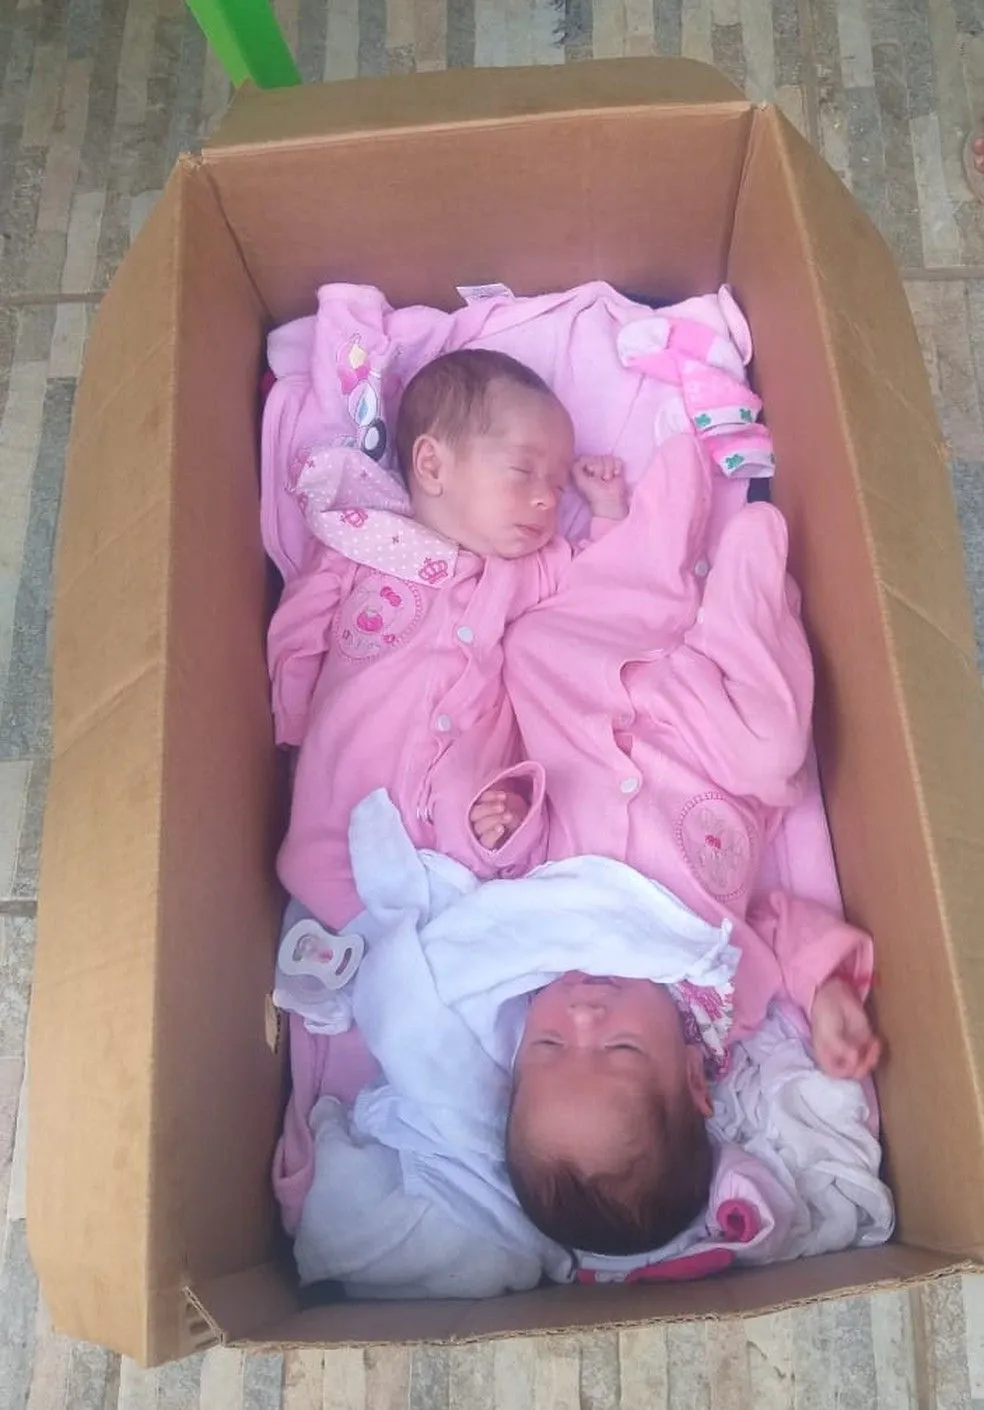 Gêmeas ficam dentro de uma caixa de papelão enquanto mãe trabalha 